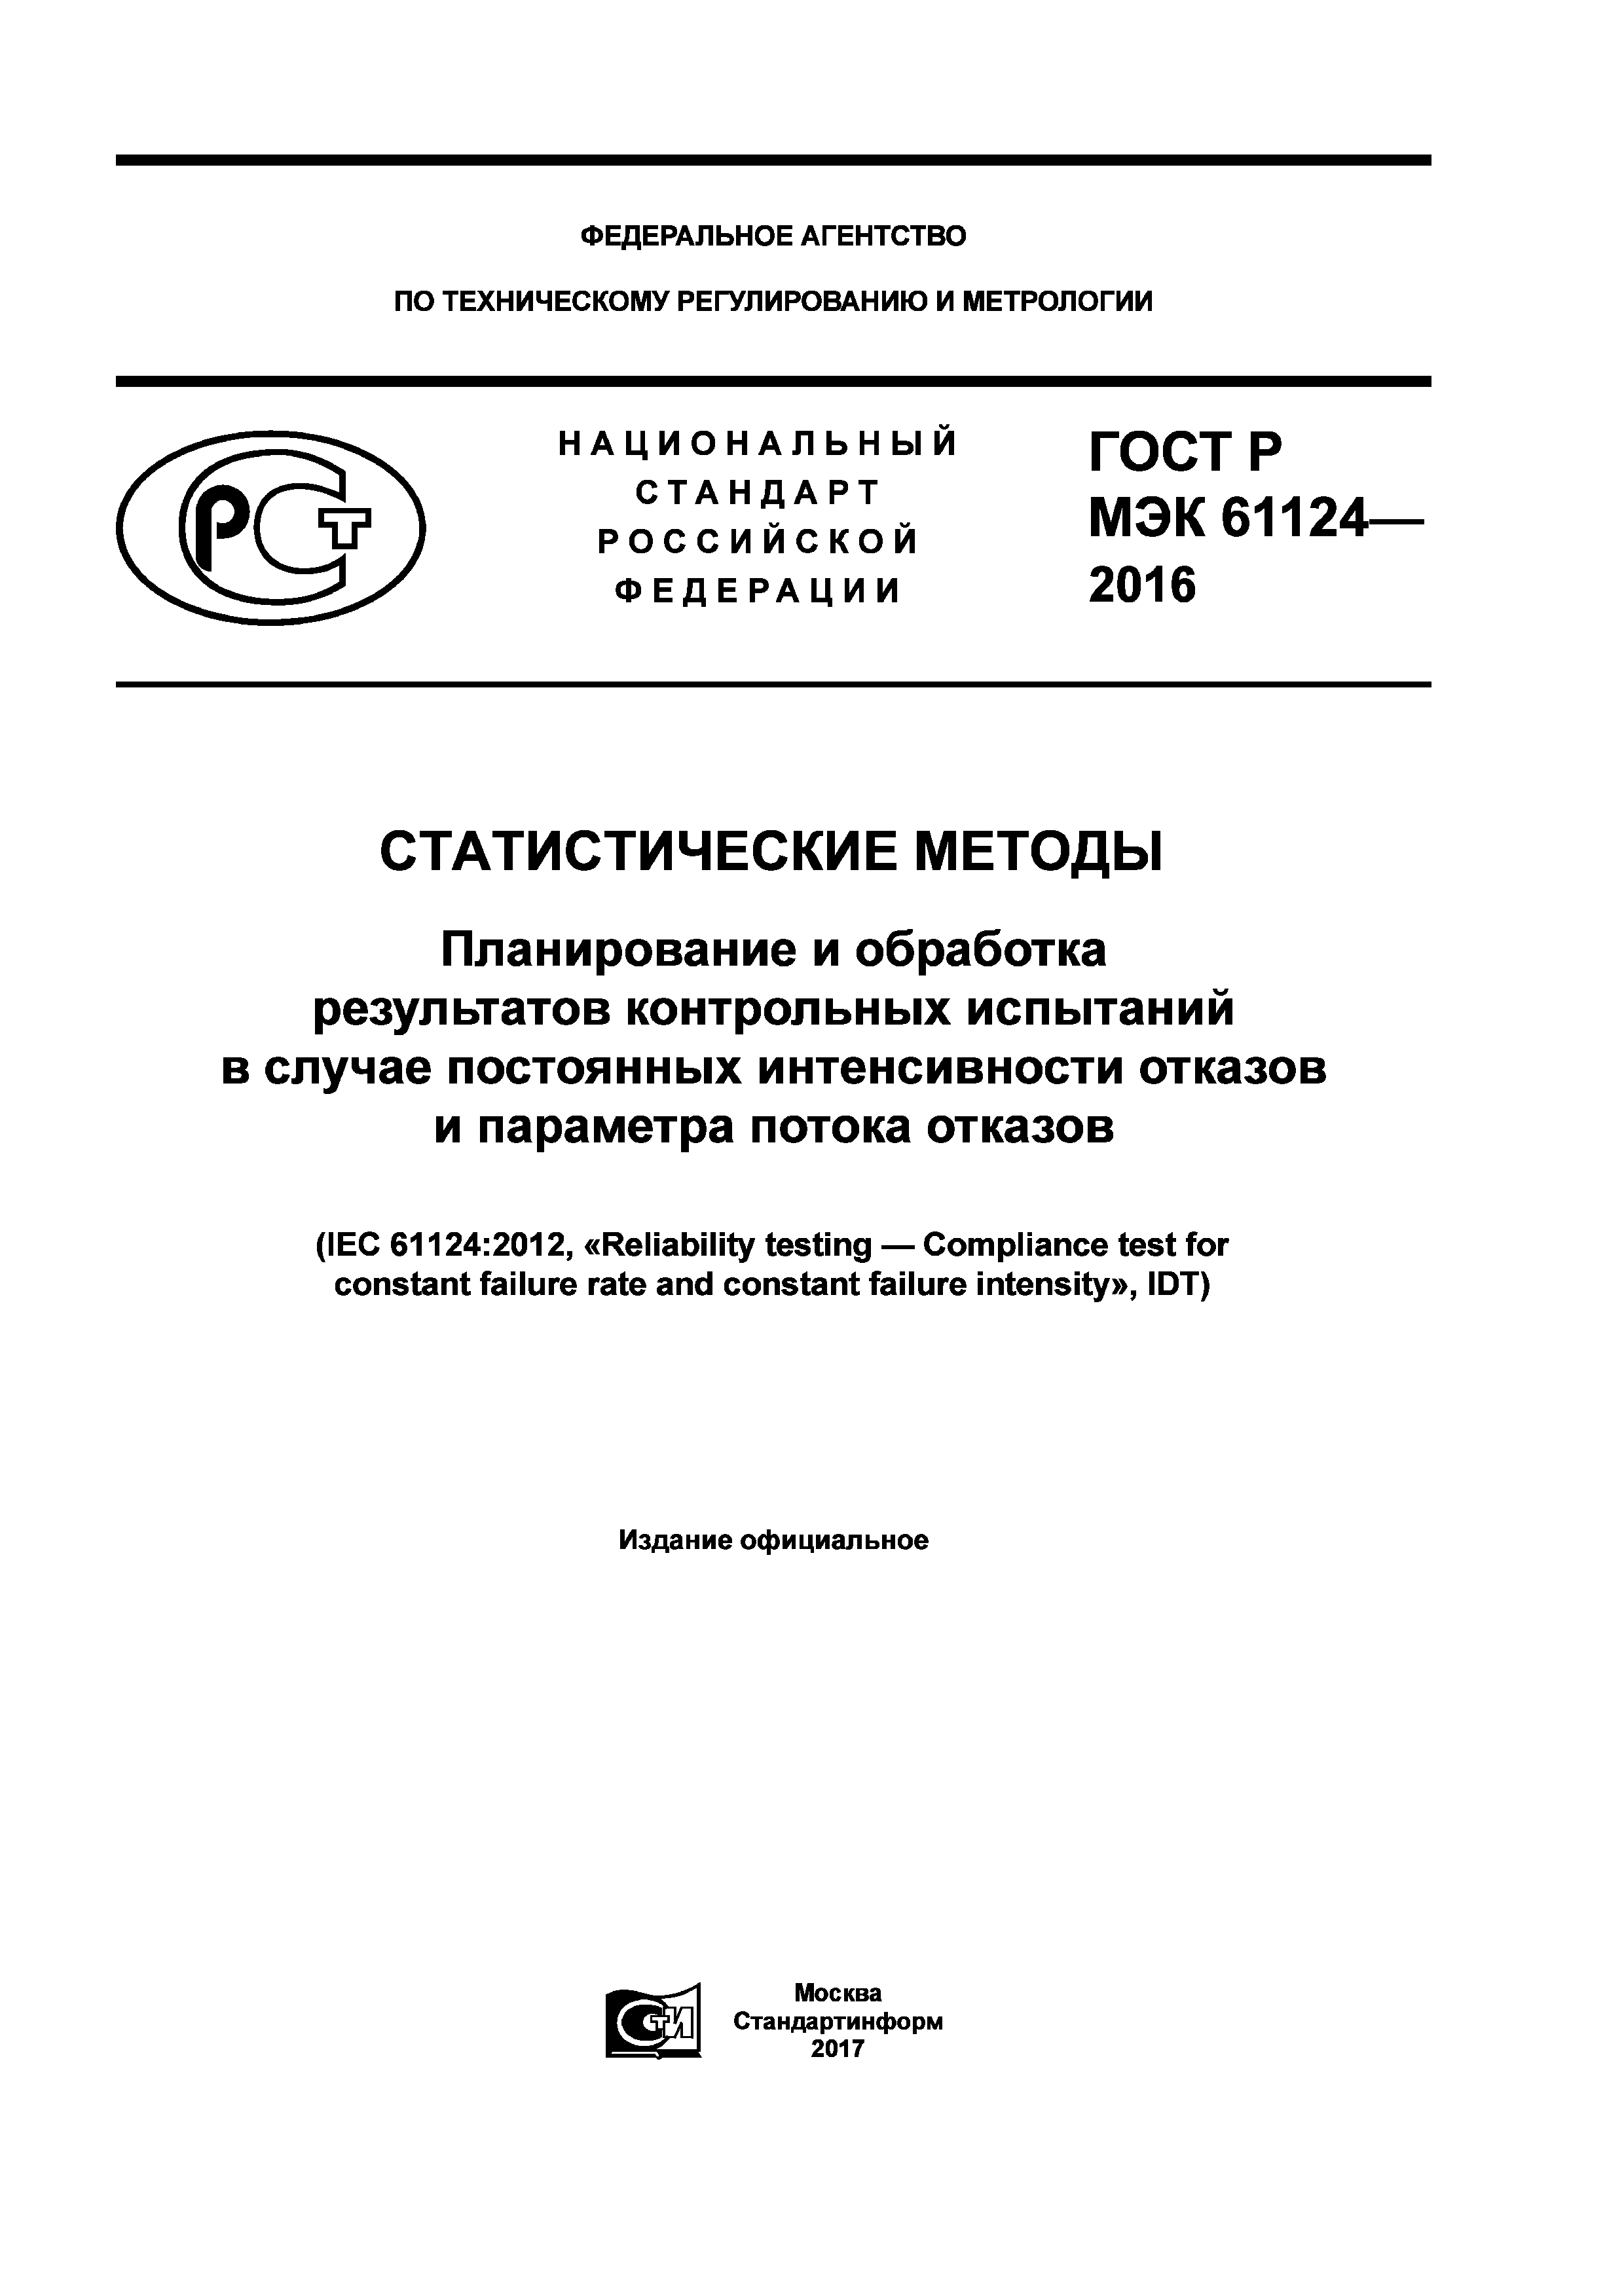 ГОСТ Р МЭК 61124-2016